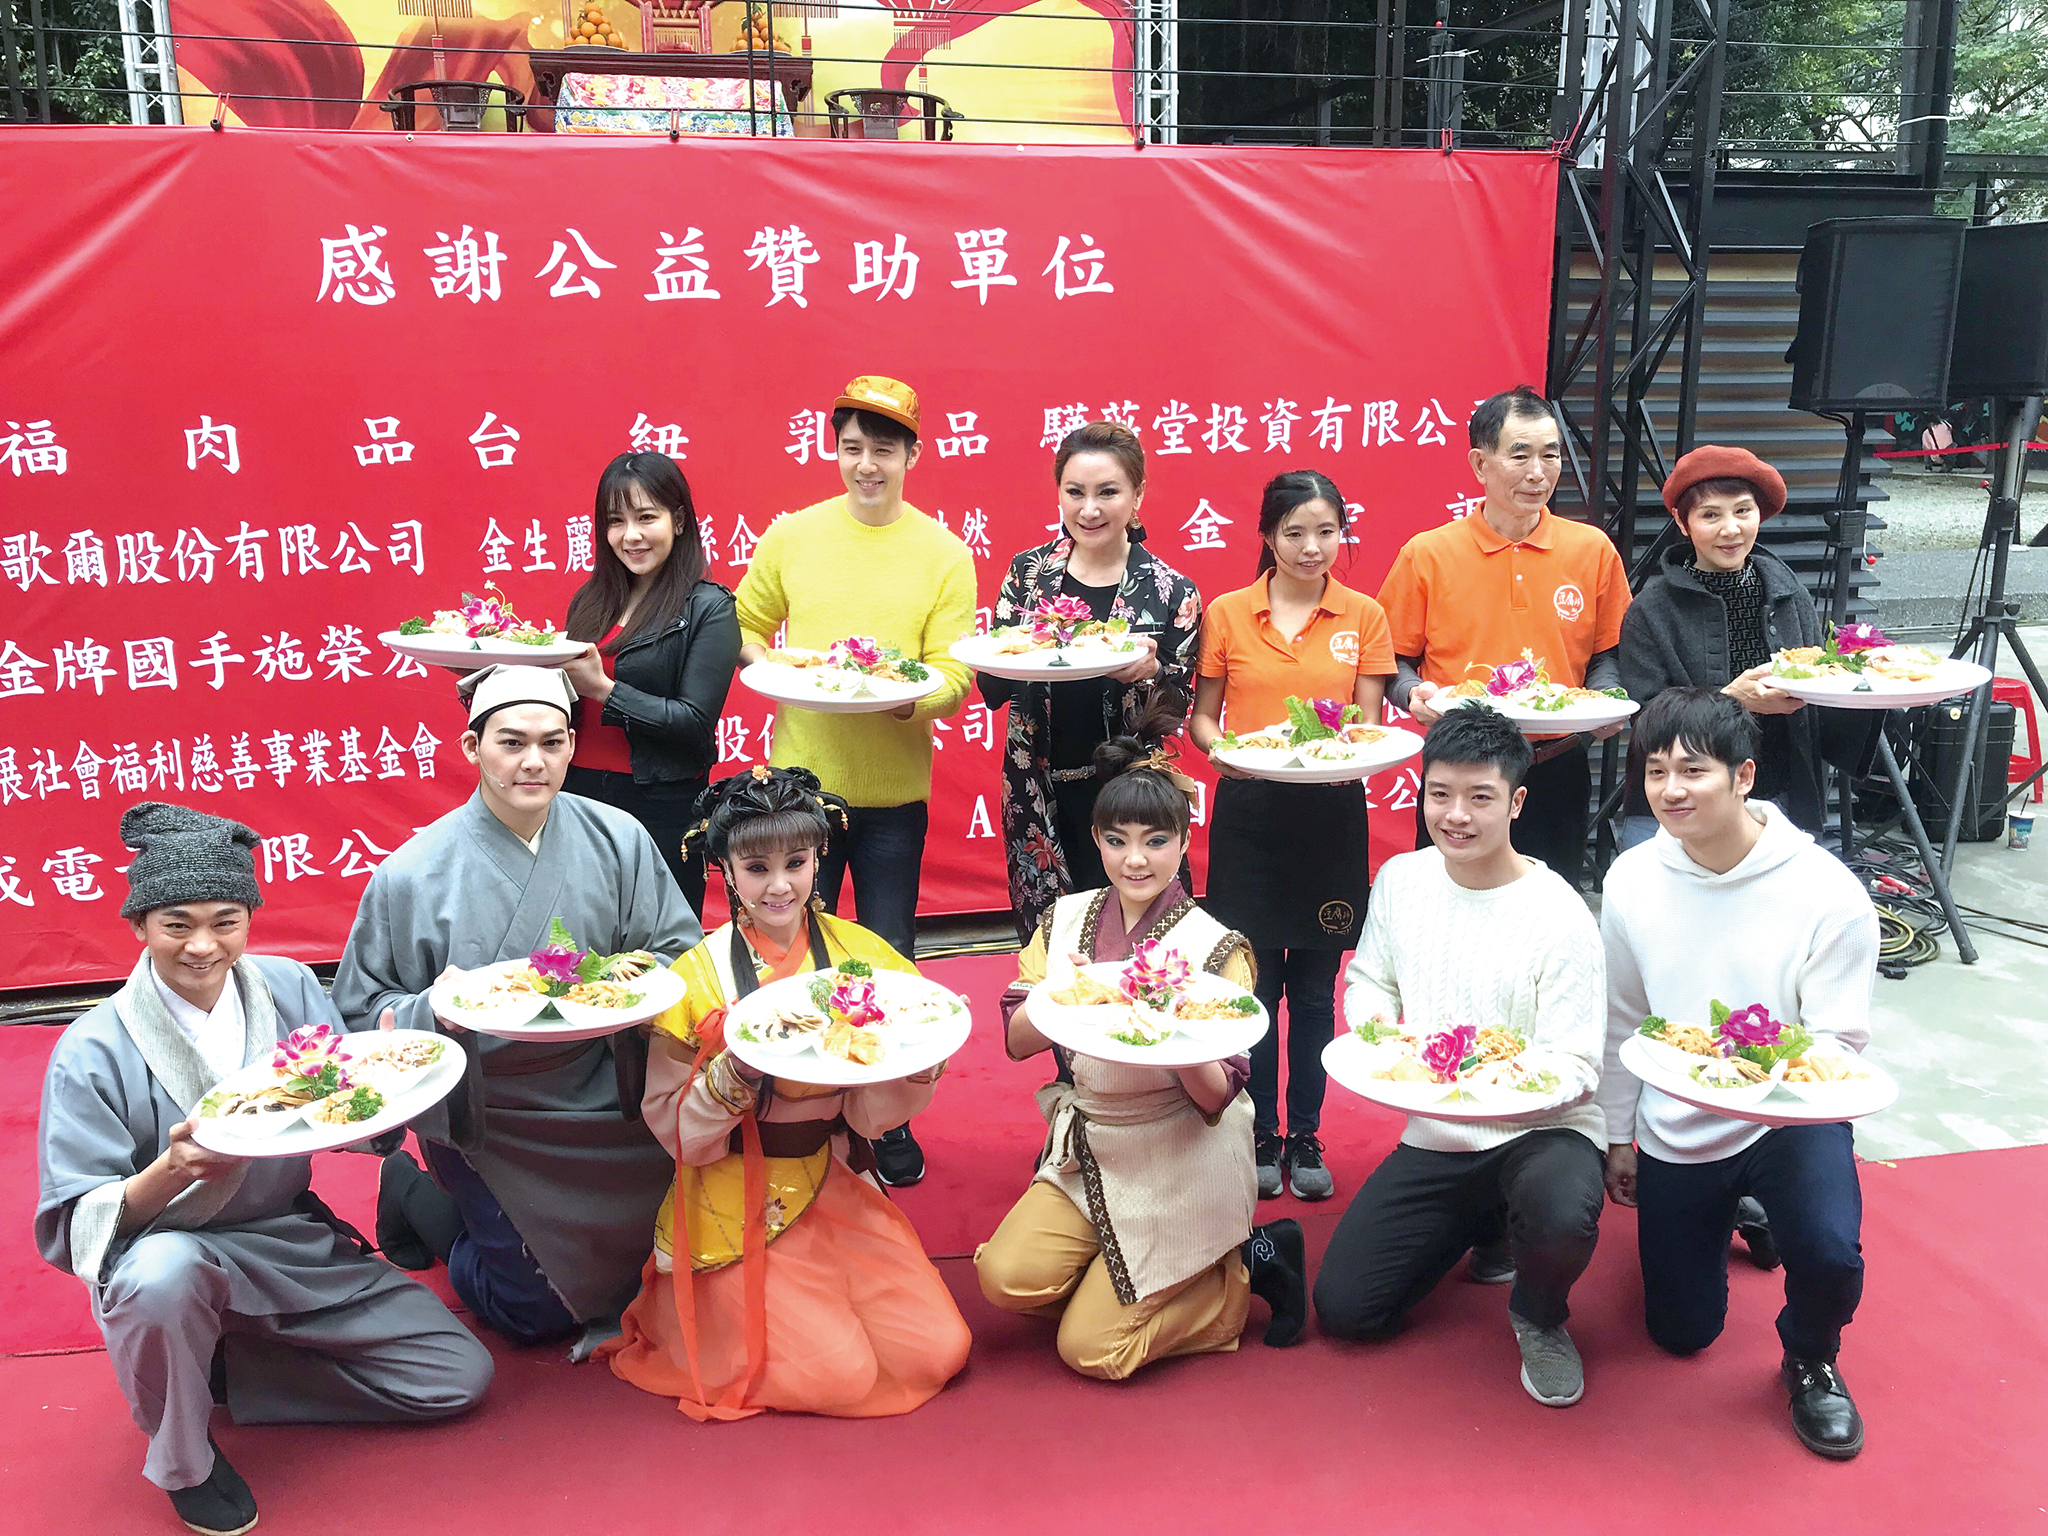 陳亞蘭(立者左三)、胡宇威(立者左二)、豆腐師(立者右二)以上菜秀為活動揭開序幕。